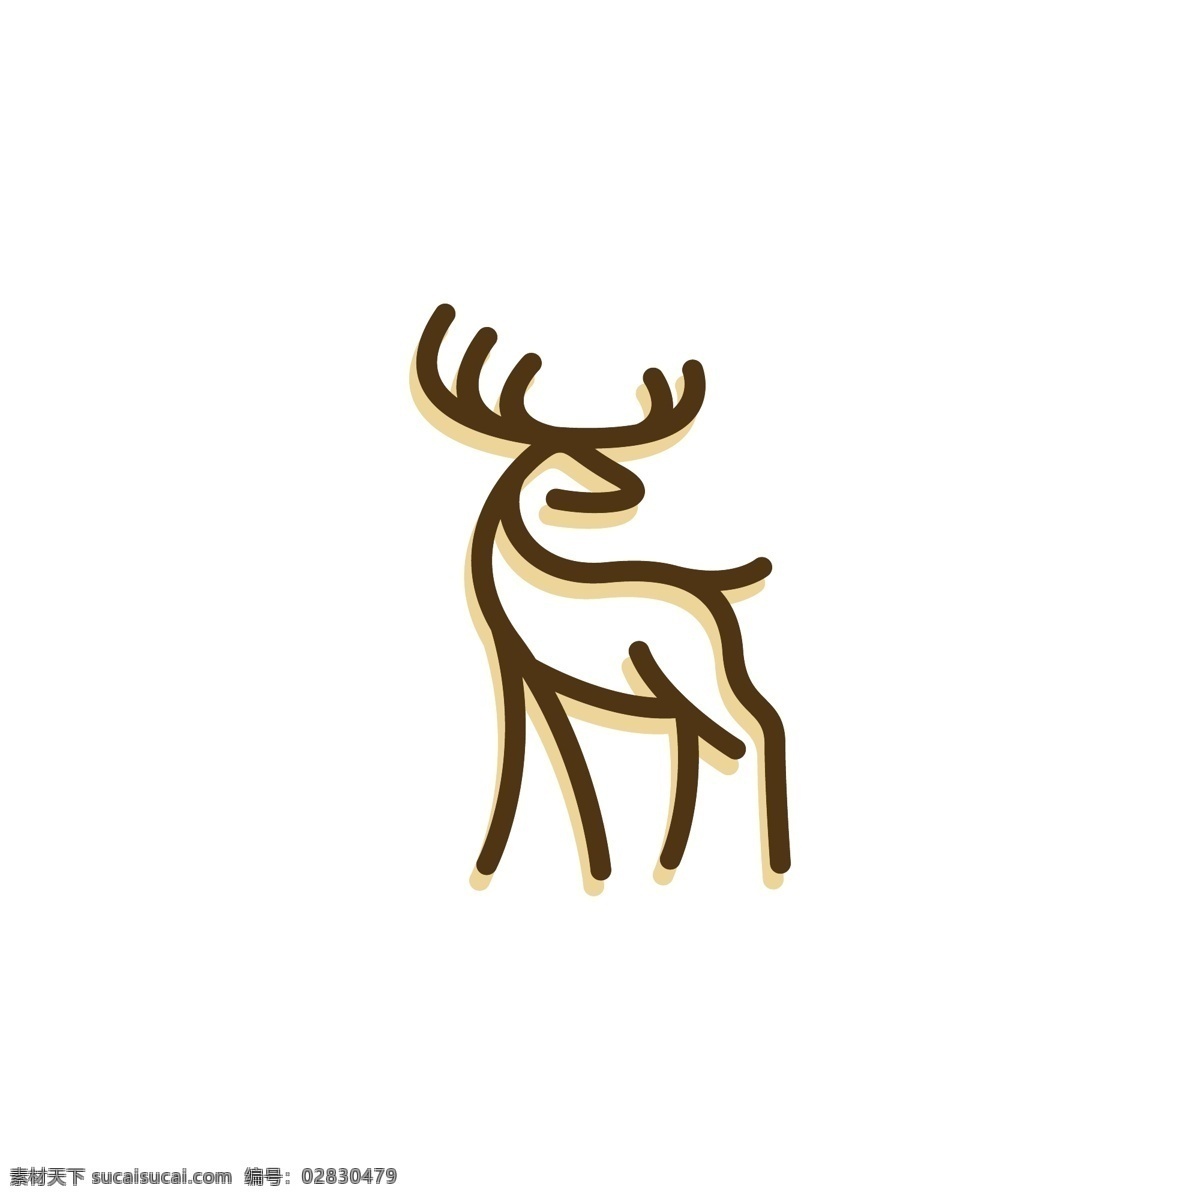 鹿头标志 鹿头logo 鹿logo 鹿子logo logo 图标 标志图标 标志 简洁logo 商业logo 公司logo 企业logo 创意logo 设计公司 logo设计